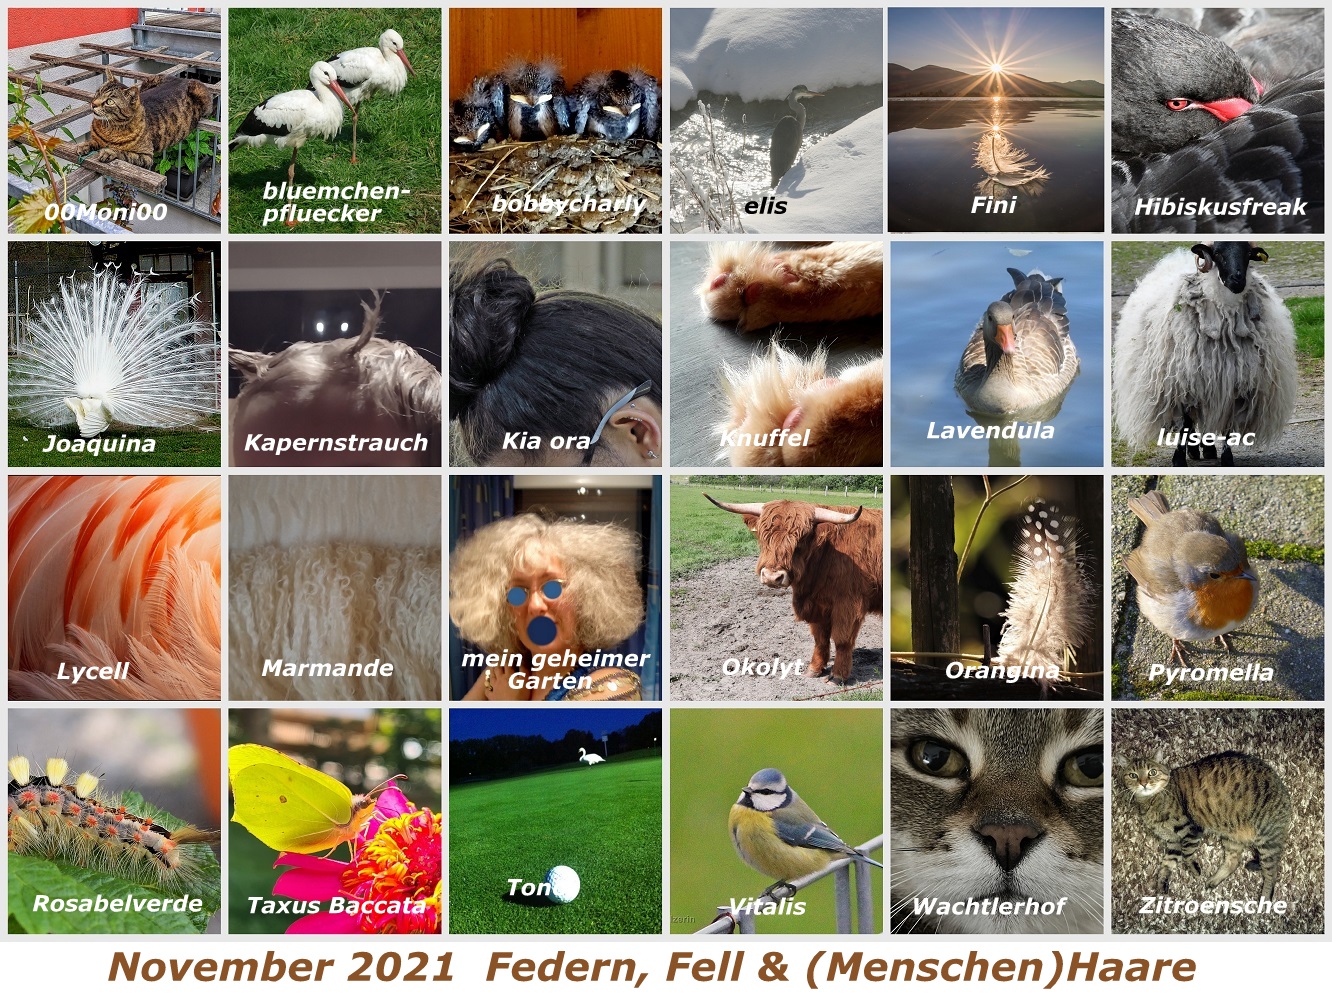 ___h-g-november-2021-federn-fell-und-menschen-haare-copy-jpg.697779